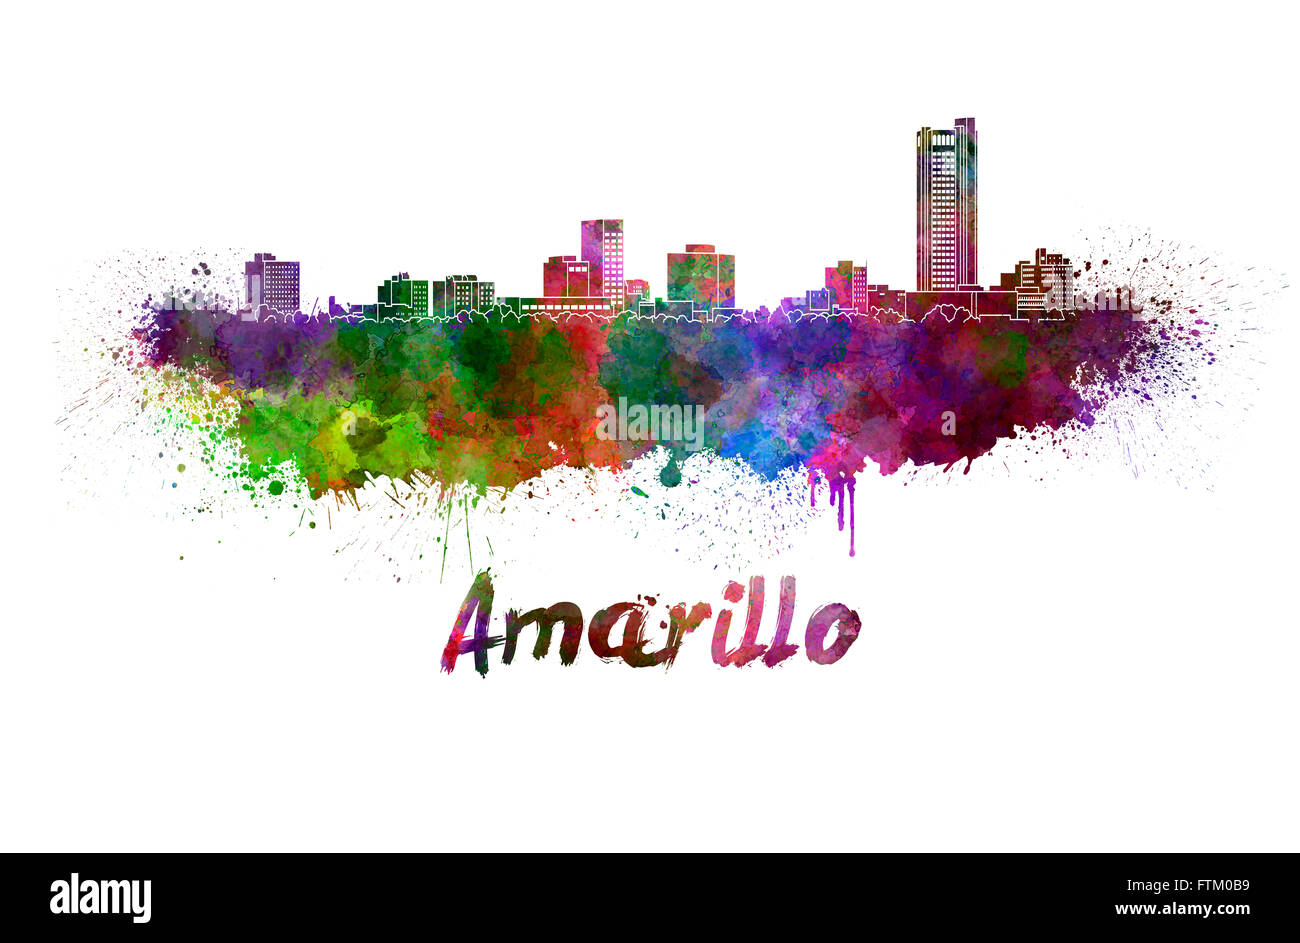 Amarillo skyline à l'aquarelle des éclaboussures avec clipping path Banque D'Images